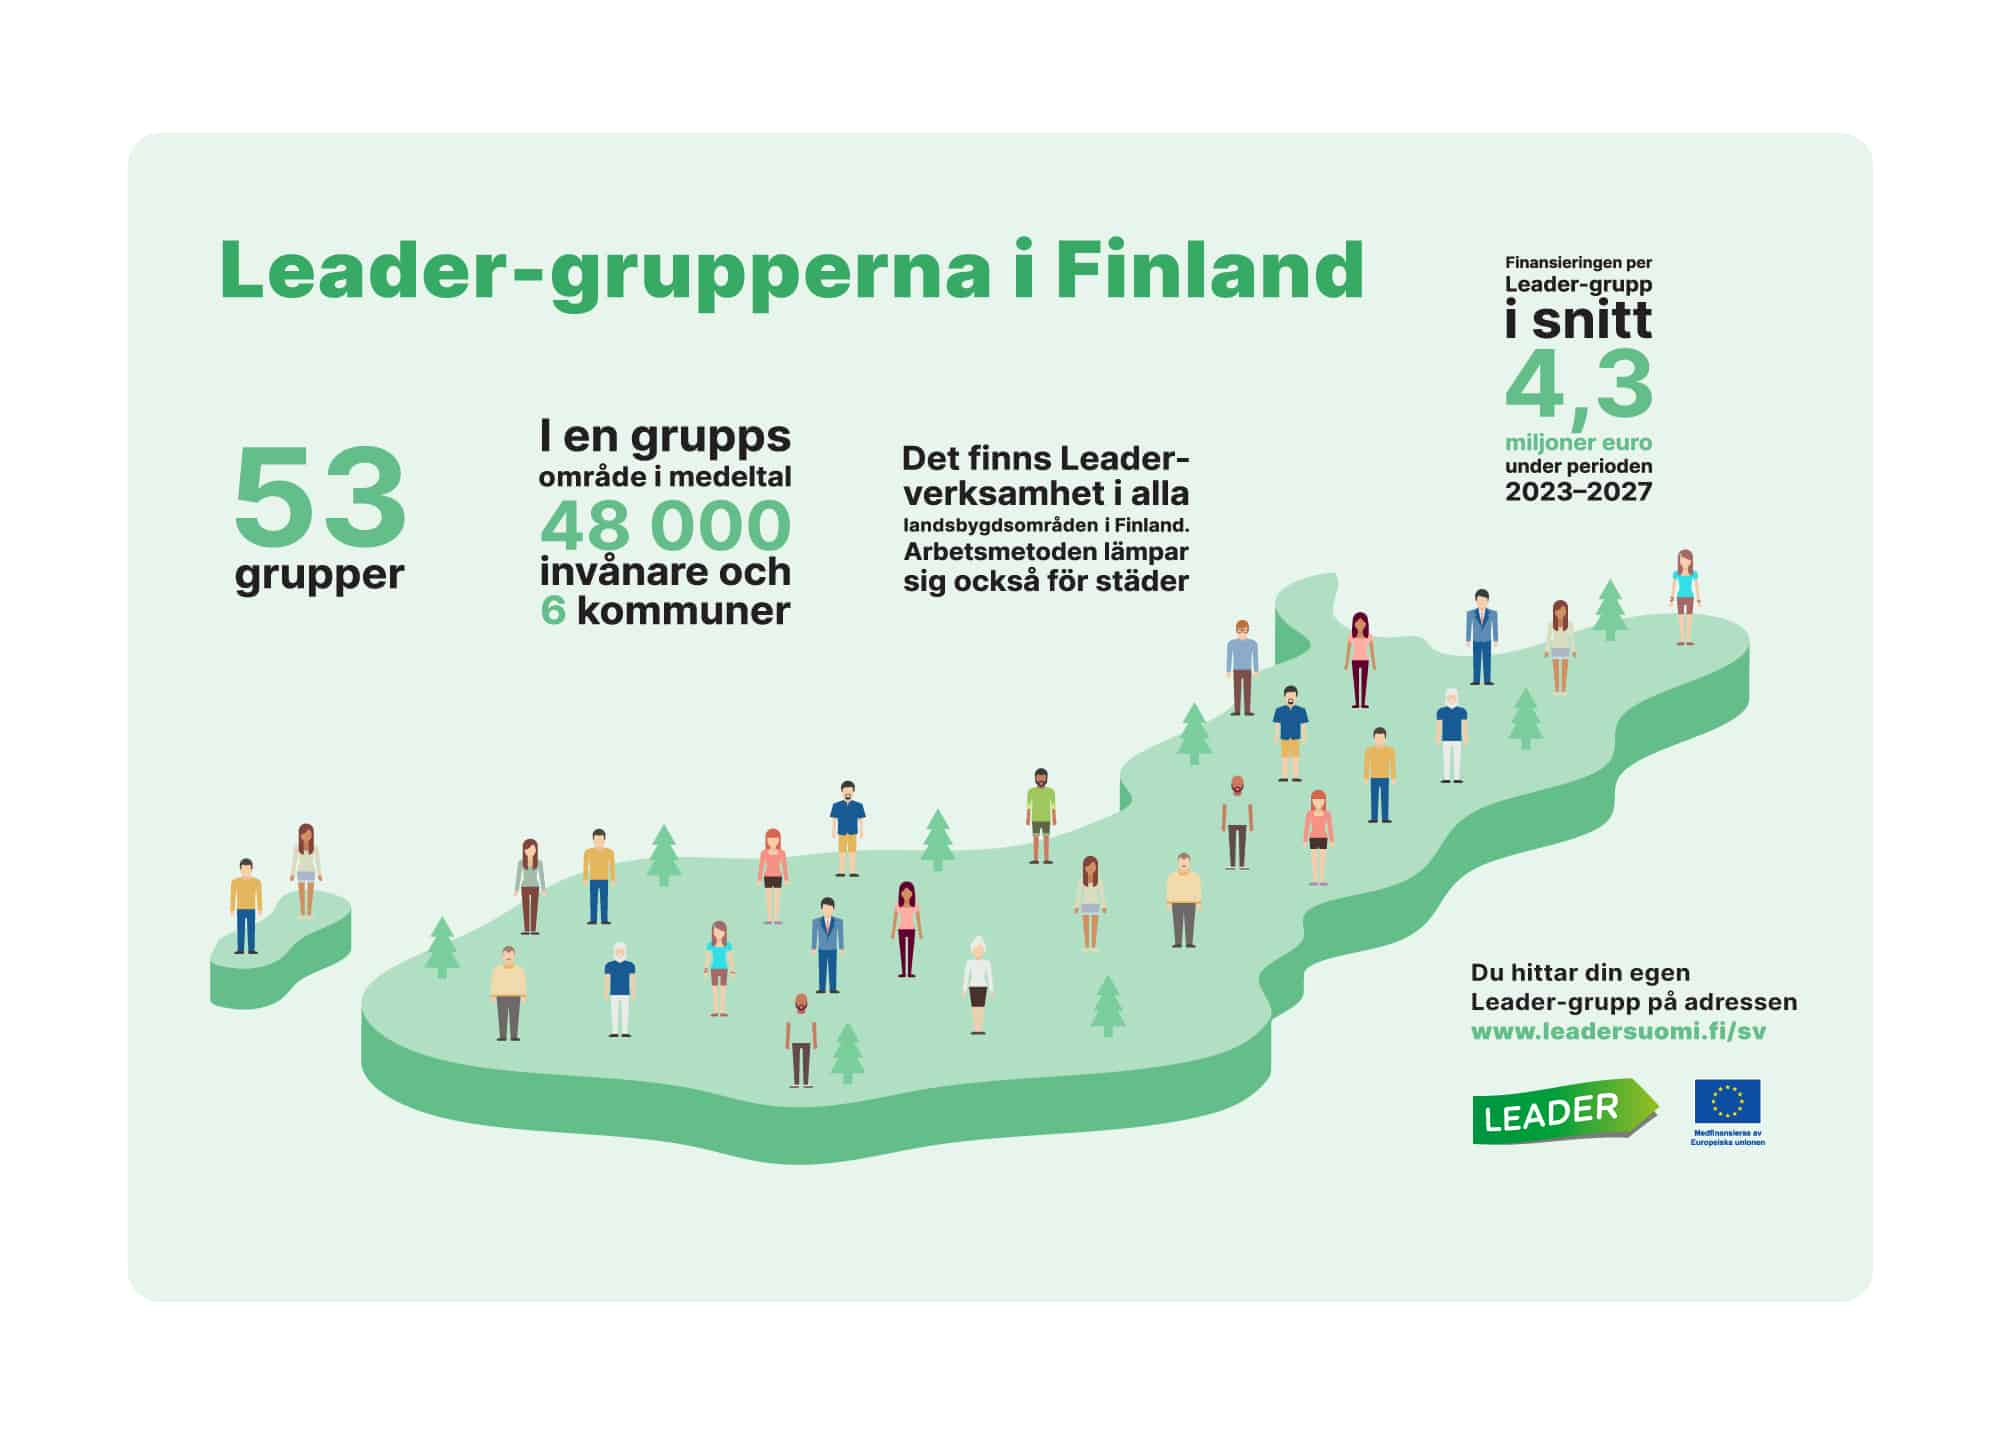 Leader-grupperna i Finland: 53 grupper. I en grupps område i medeltal 48000 invånare och 6 kommuner. Det finns Leader-verksamhet i alla landsbygdsområden i Finland. Arbetsmetoden lämpar sig också för städer. Finansieringen per Leader-grupp i snitt 4,3 miljoner euro under perioden 2023-2027.